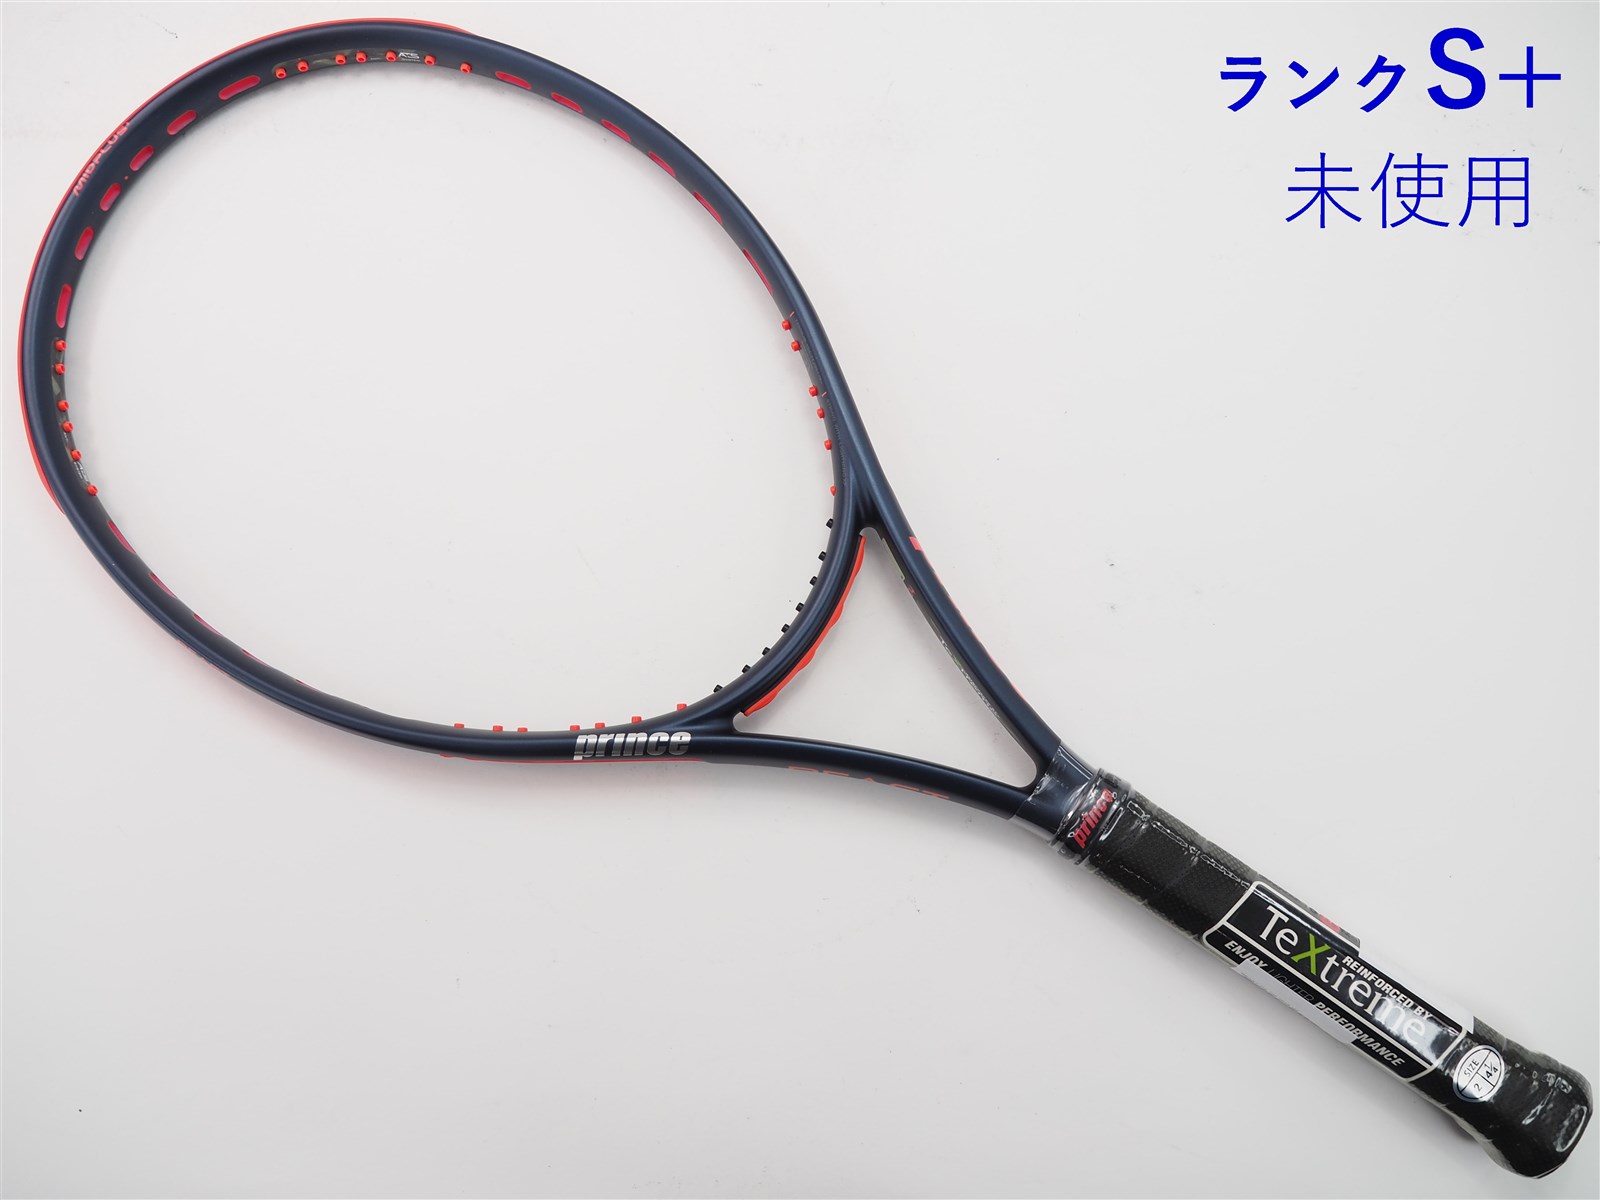 【サイズ】 プリンス prince テニスラケット ビースト オースリー 100 BEAST O3 100(300g) 7TJ156 G2